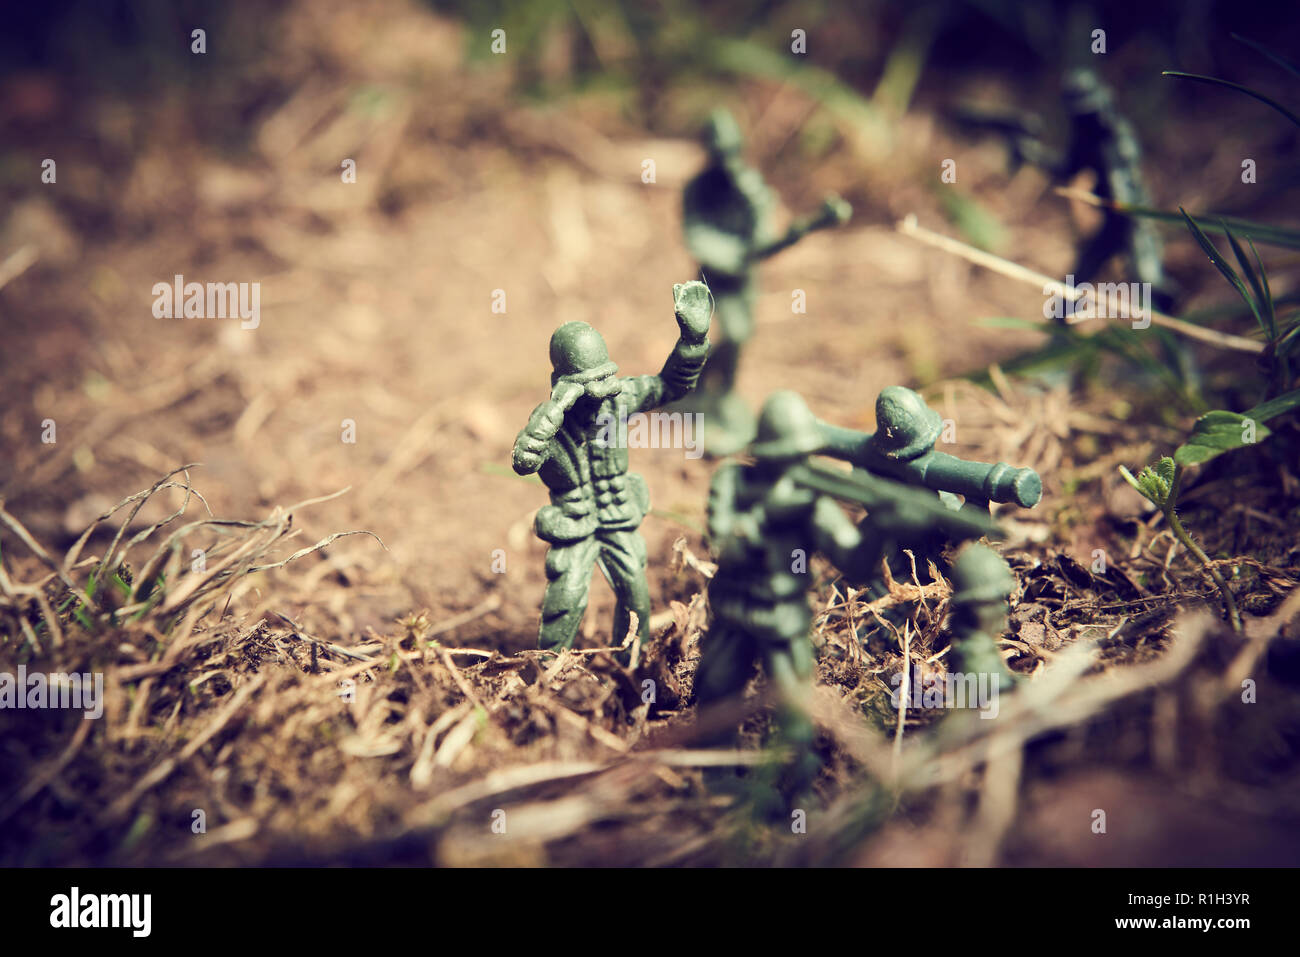 Soldaten im Dschungel zu kämpfen. Konzept Bild von Spielzeug aus Plastik Soldaten in echtem Rasen. Selektive konzentrieren. Stockfoto